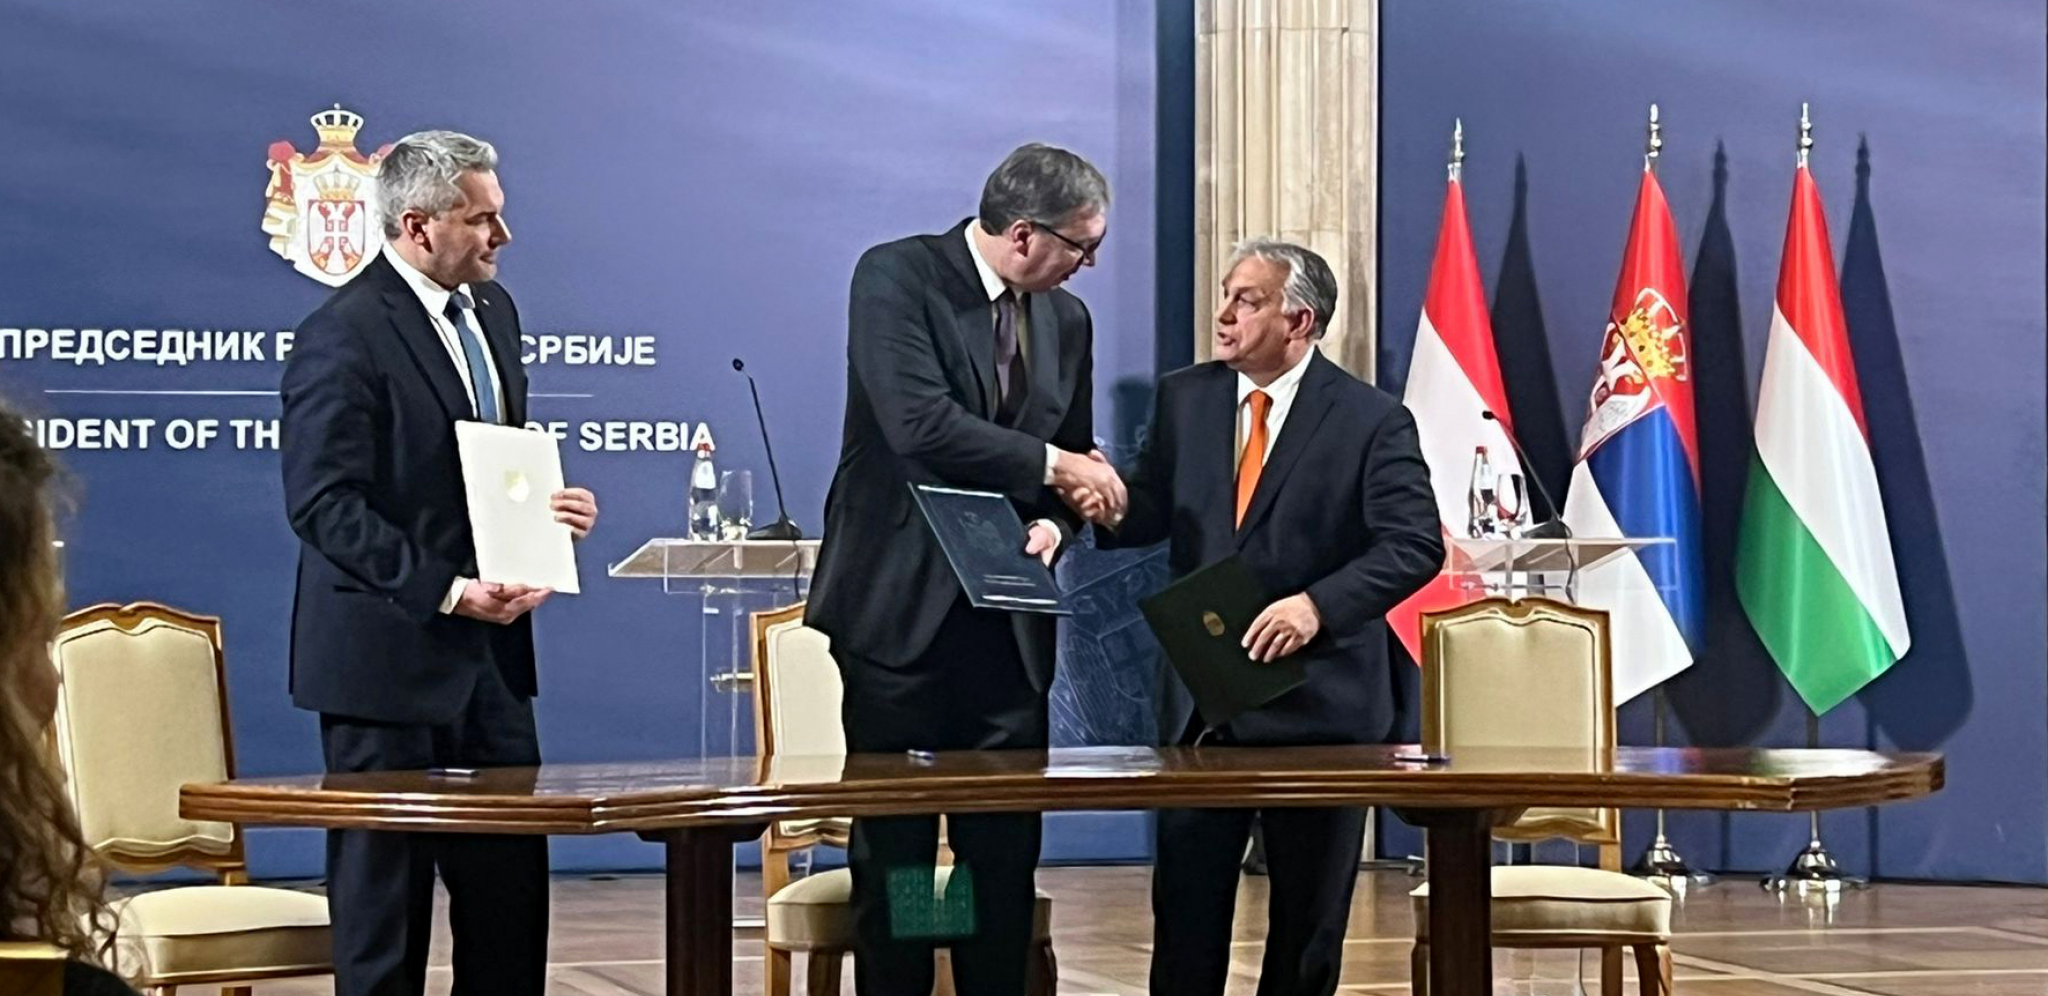 ZNAČAJAN DOGOVOR SRBIJE, MAĐARSKE I AUSTRIJE Potpisan memorandum u Predsedništvu Srbije